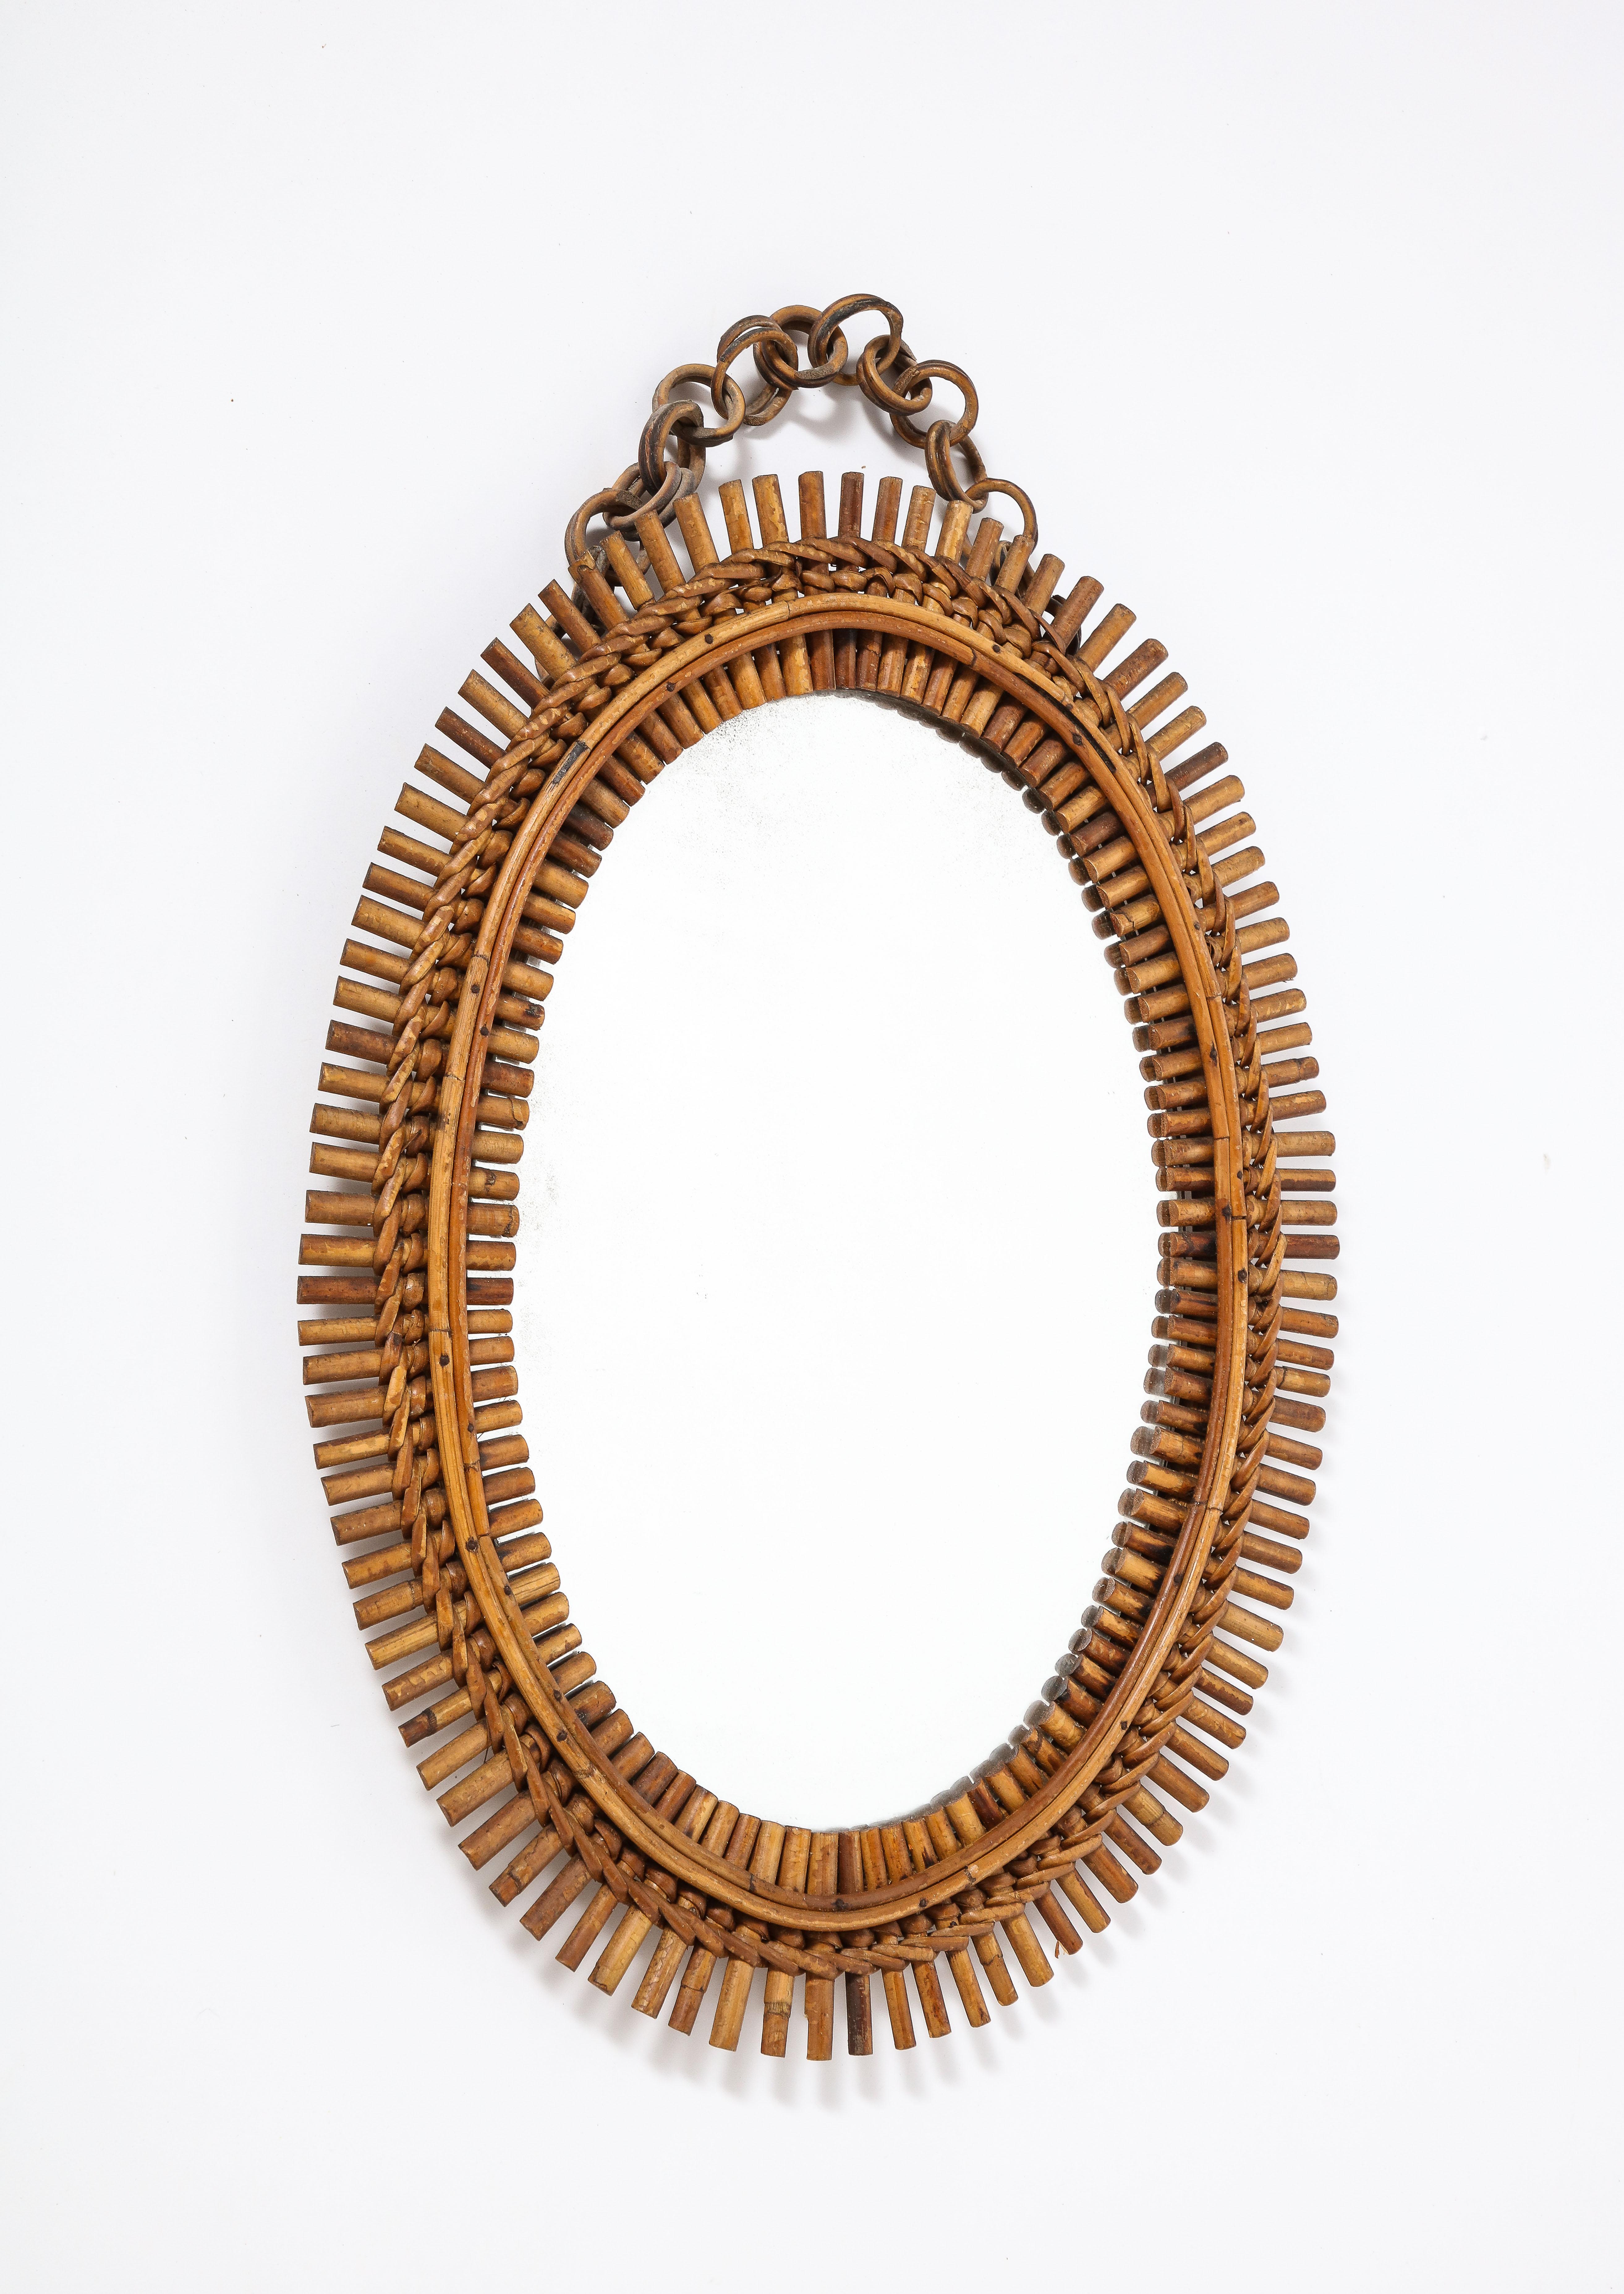 Miroir ovale italien en bambou des années 1950 avec une charmante chaîne. Support en velours et plaque de miroir d'origine. 
Italie, vers 1950 
Taille : 27